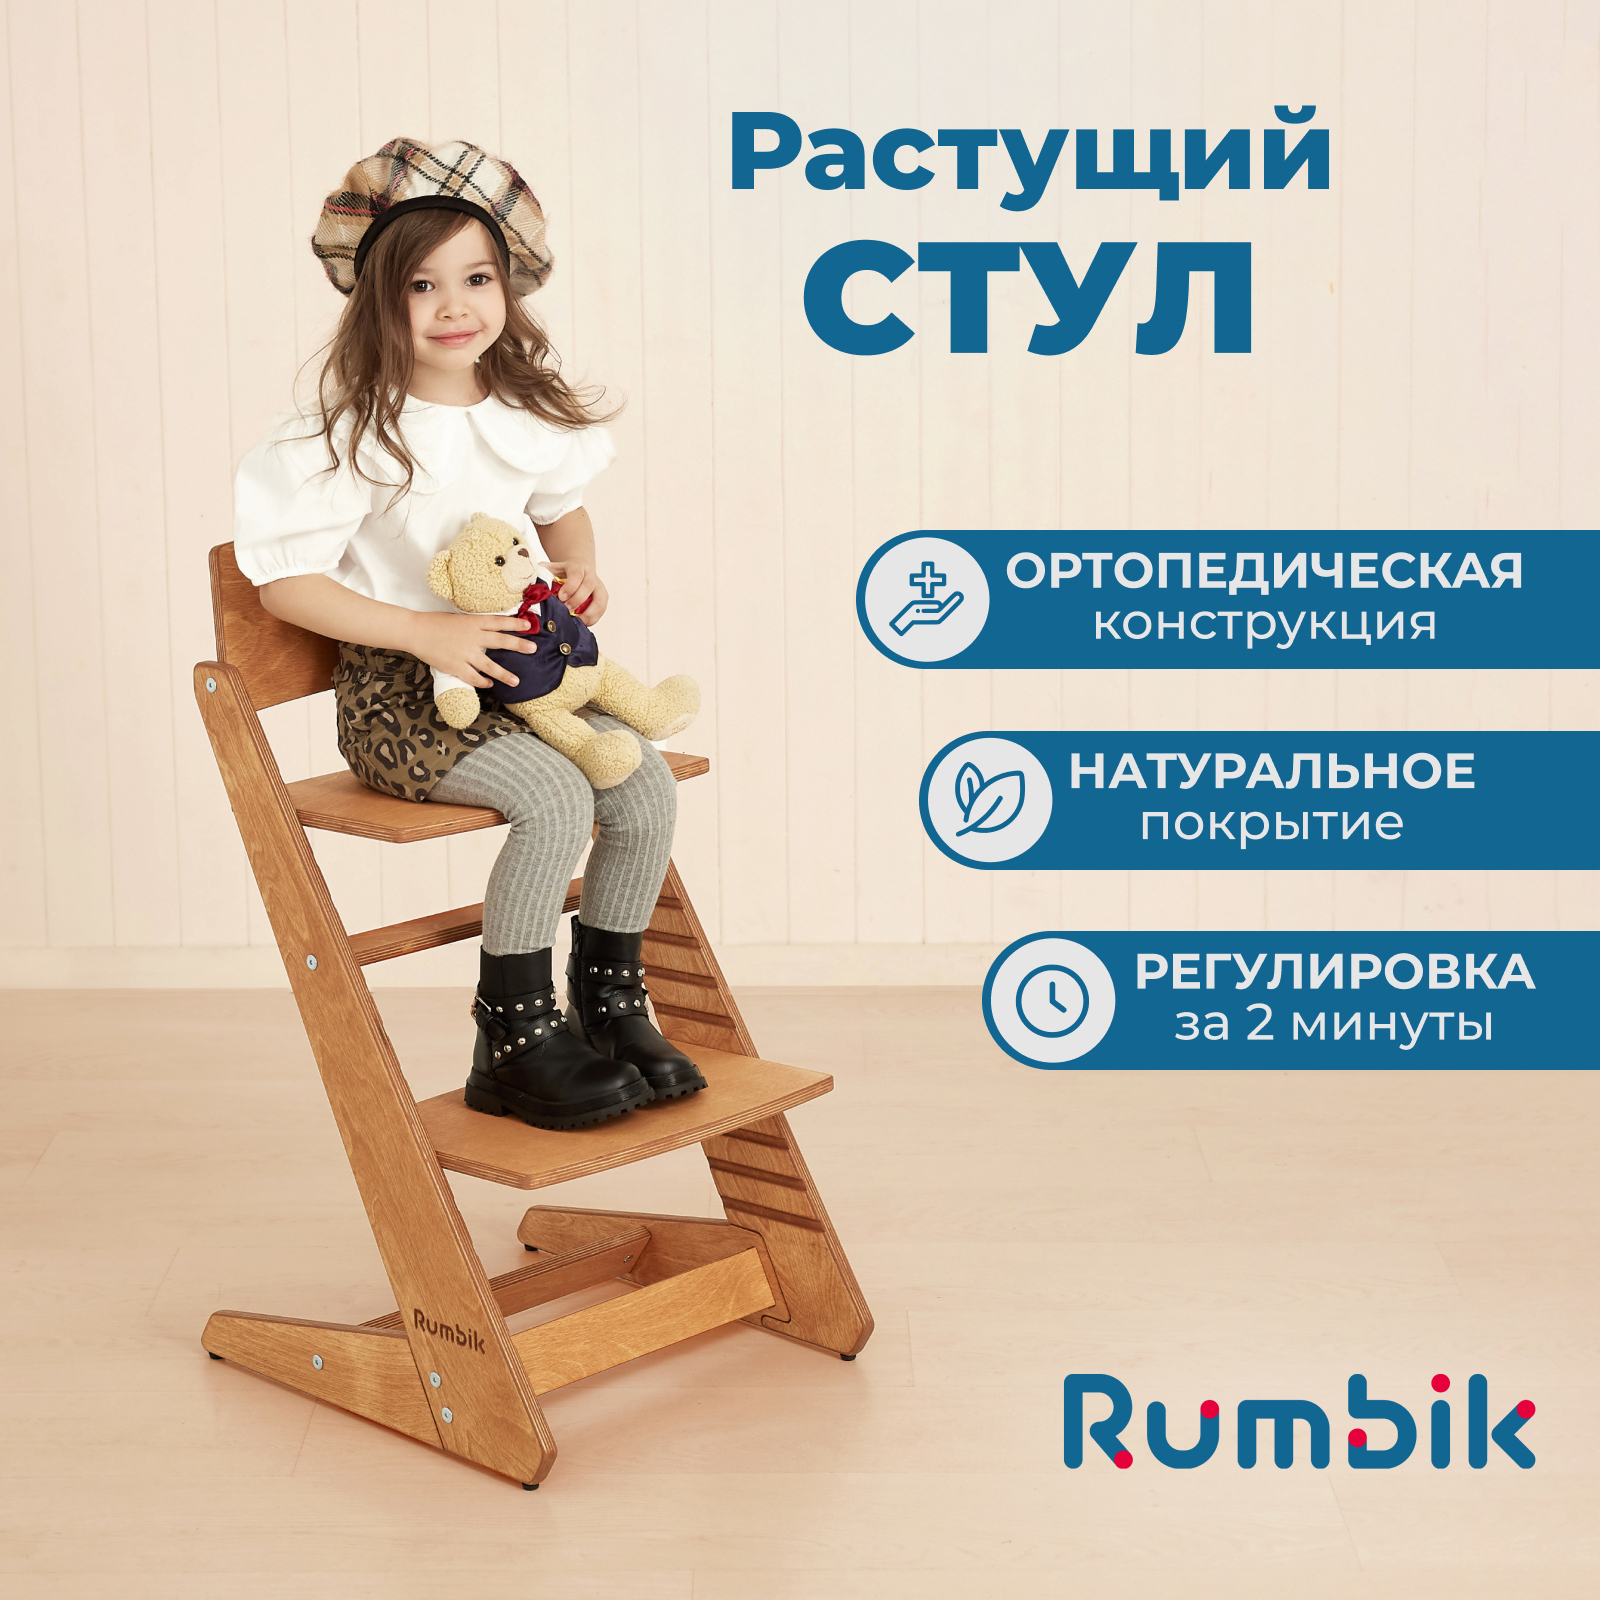 Растущий стул для детей Rumbik Kit вишня, регулируемый стульчик для кормления, деревянный стульчик для кормления roba растущий sit up super maxi